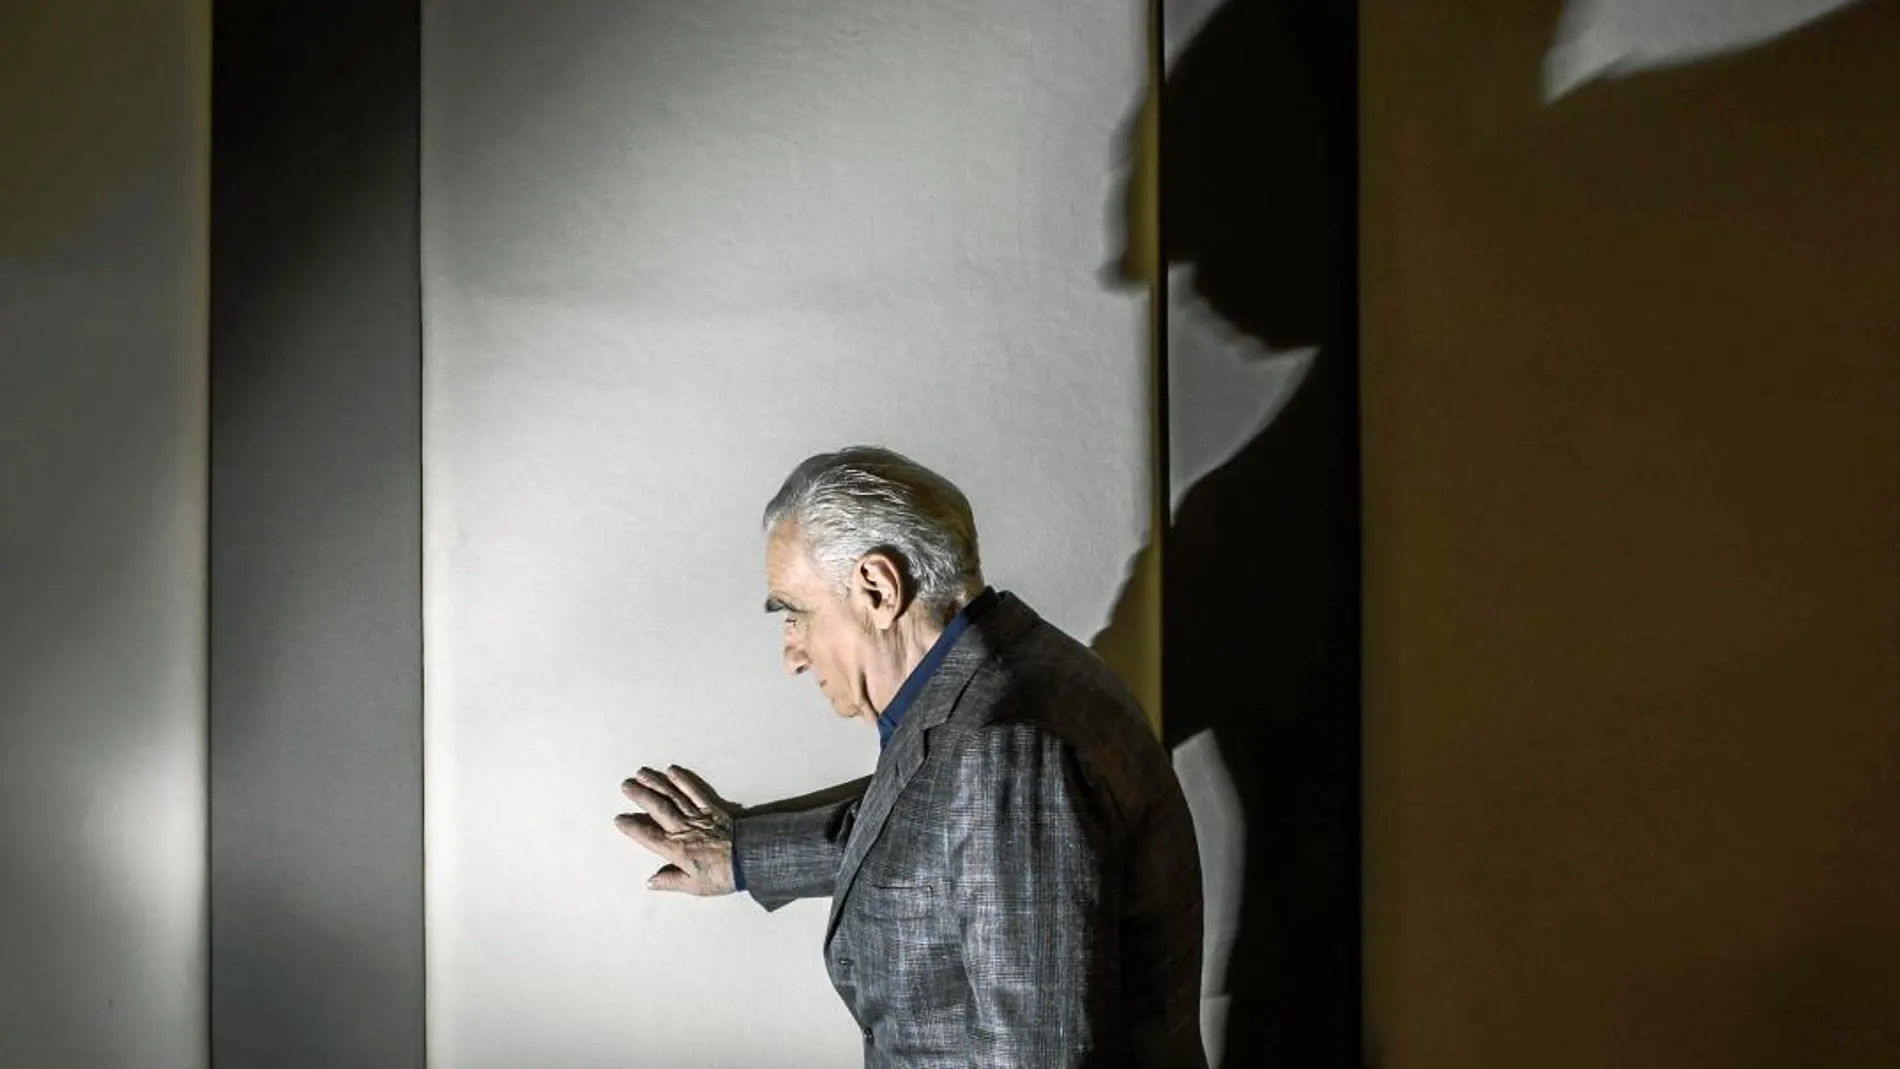 Martin Scorsese, que ha reabierto su cruzada contra las plataformas de "streaming", momentos antes de recoger el Princesa de Asturias. Foto: Alberto R. Roldán